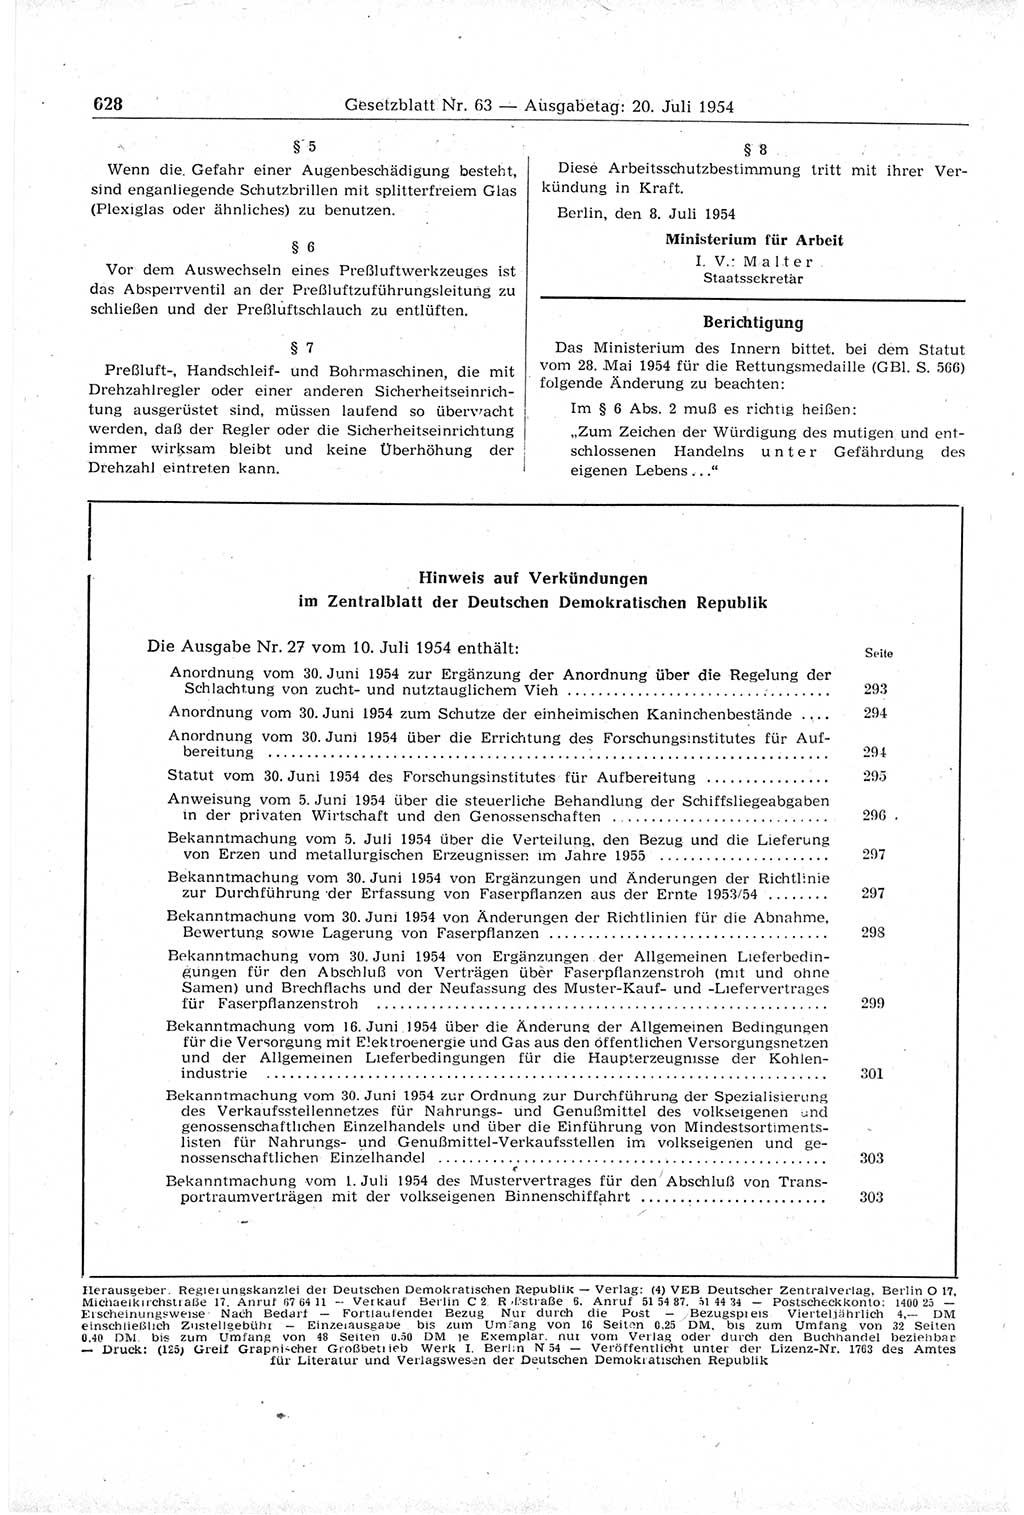 Gesetzblatt (GBl.) der Deutschen Demokratischen Republik (DDR) 1954, Seite 628 (GBl. DDR 1954, S. 628)